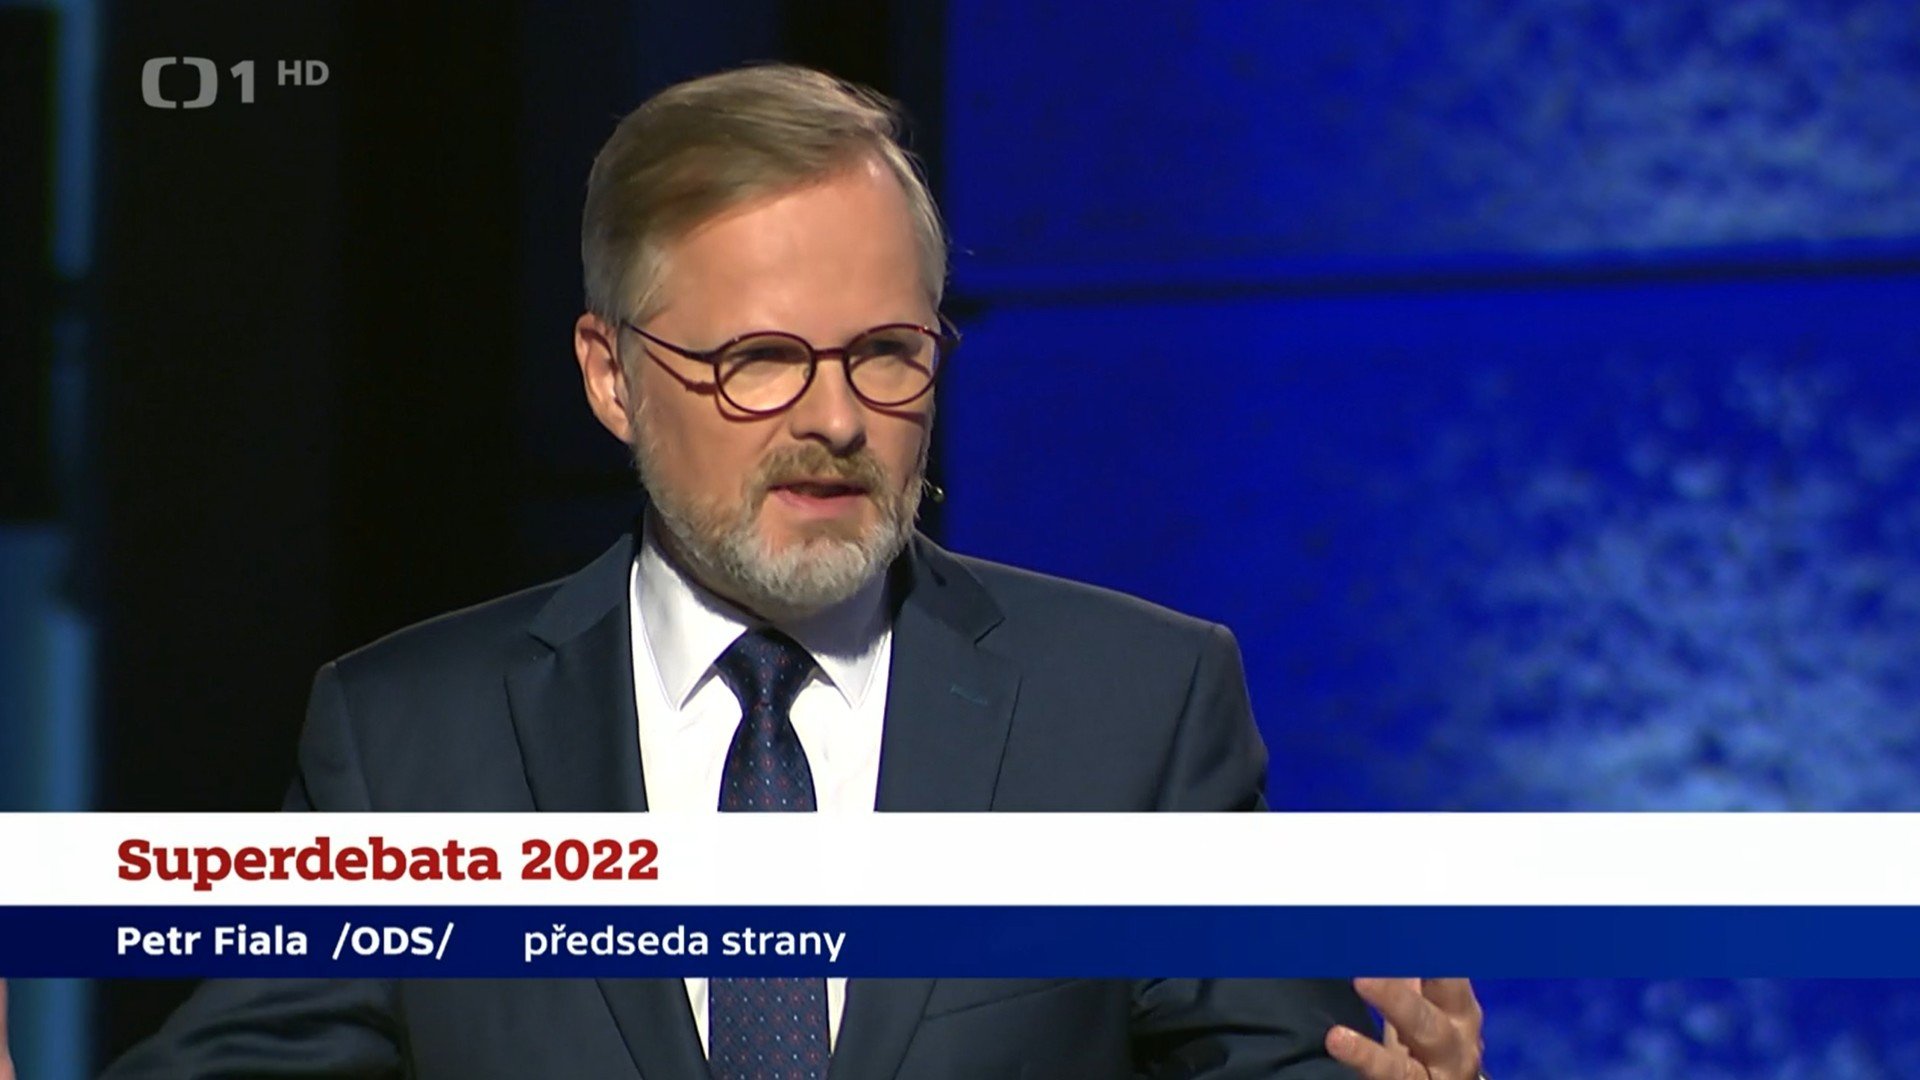 Petr Fiala: Superdebata České televize 2022: Závěrečná výzva voličům před komunálními a senátními volbami